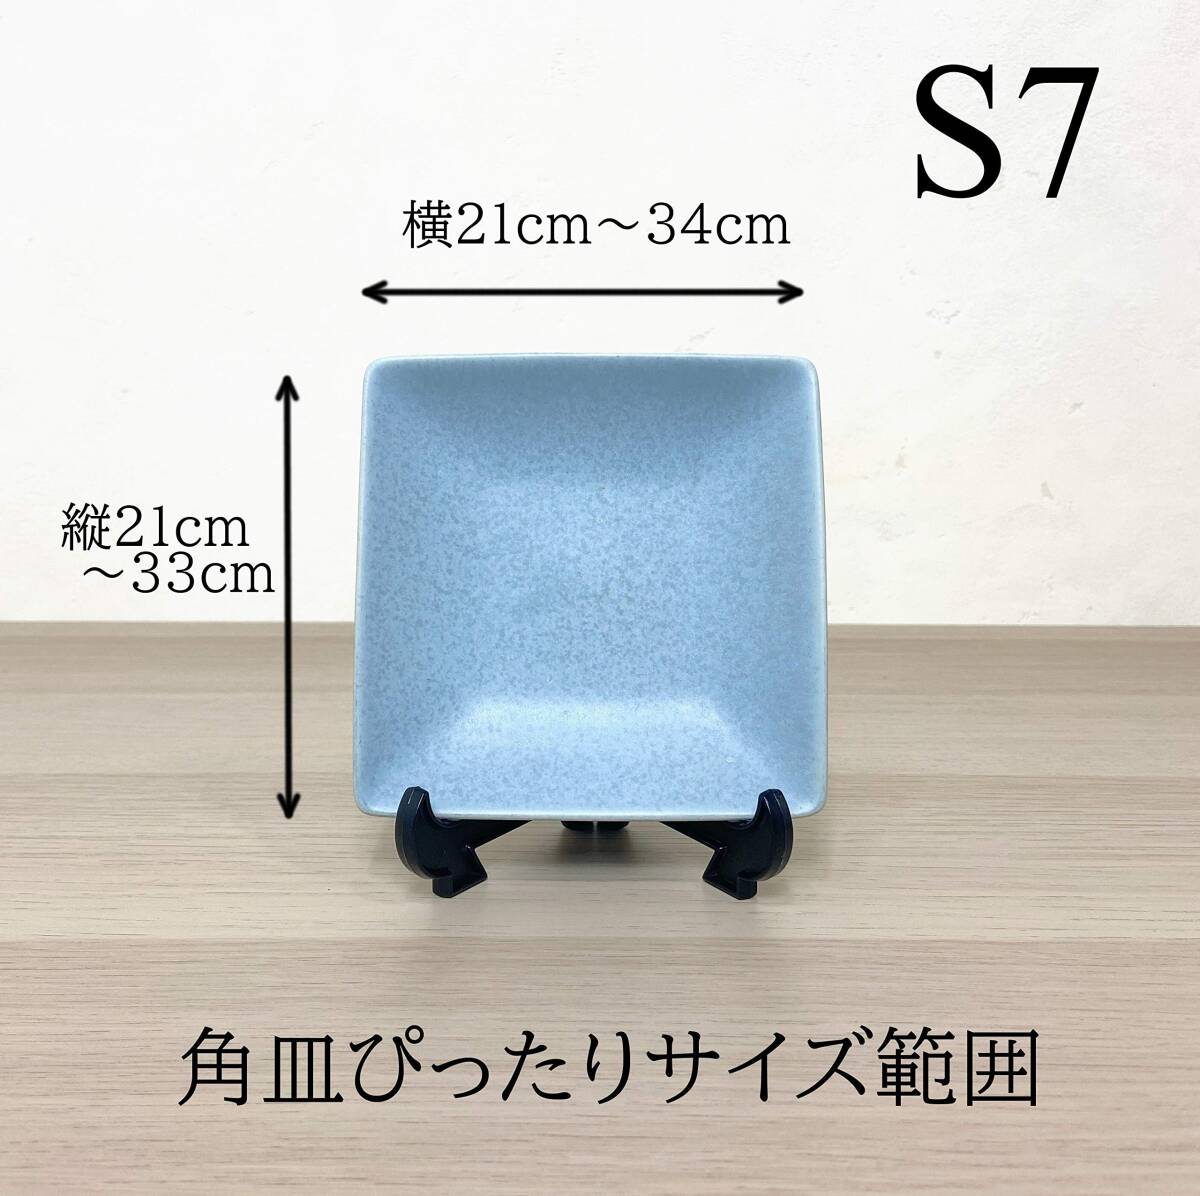 【新着商品】透明 日本製(S7 パネルスタンド 遺影額スタンド ウェルカムボード 1個) イーゼル 額立て ・B4横置き可 （25_画像3